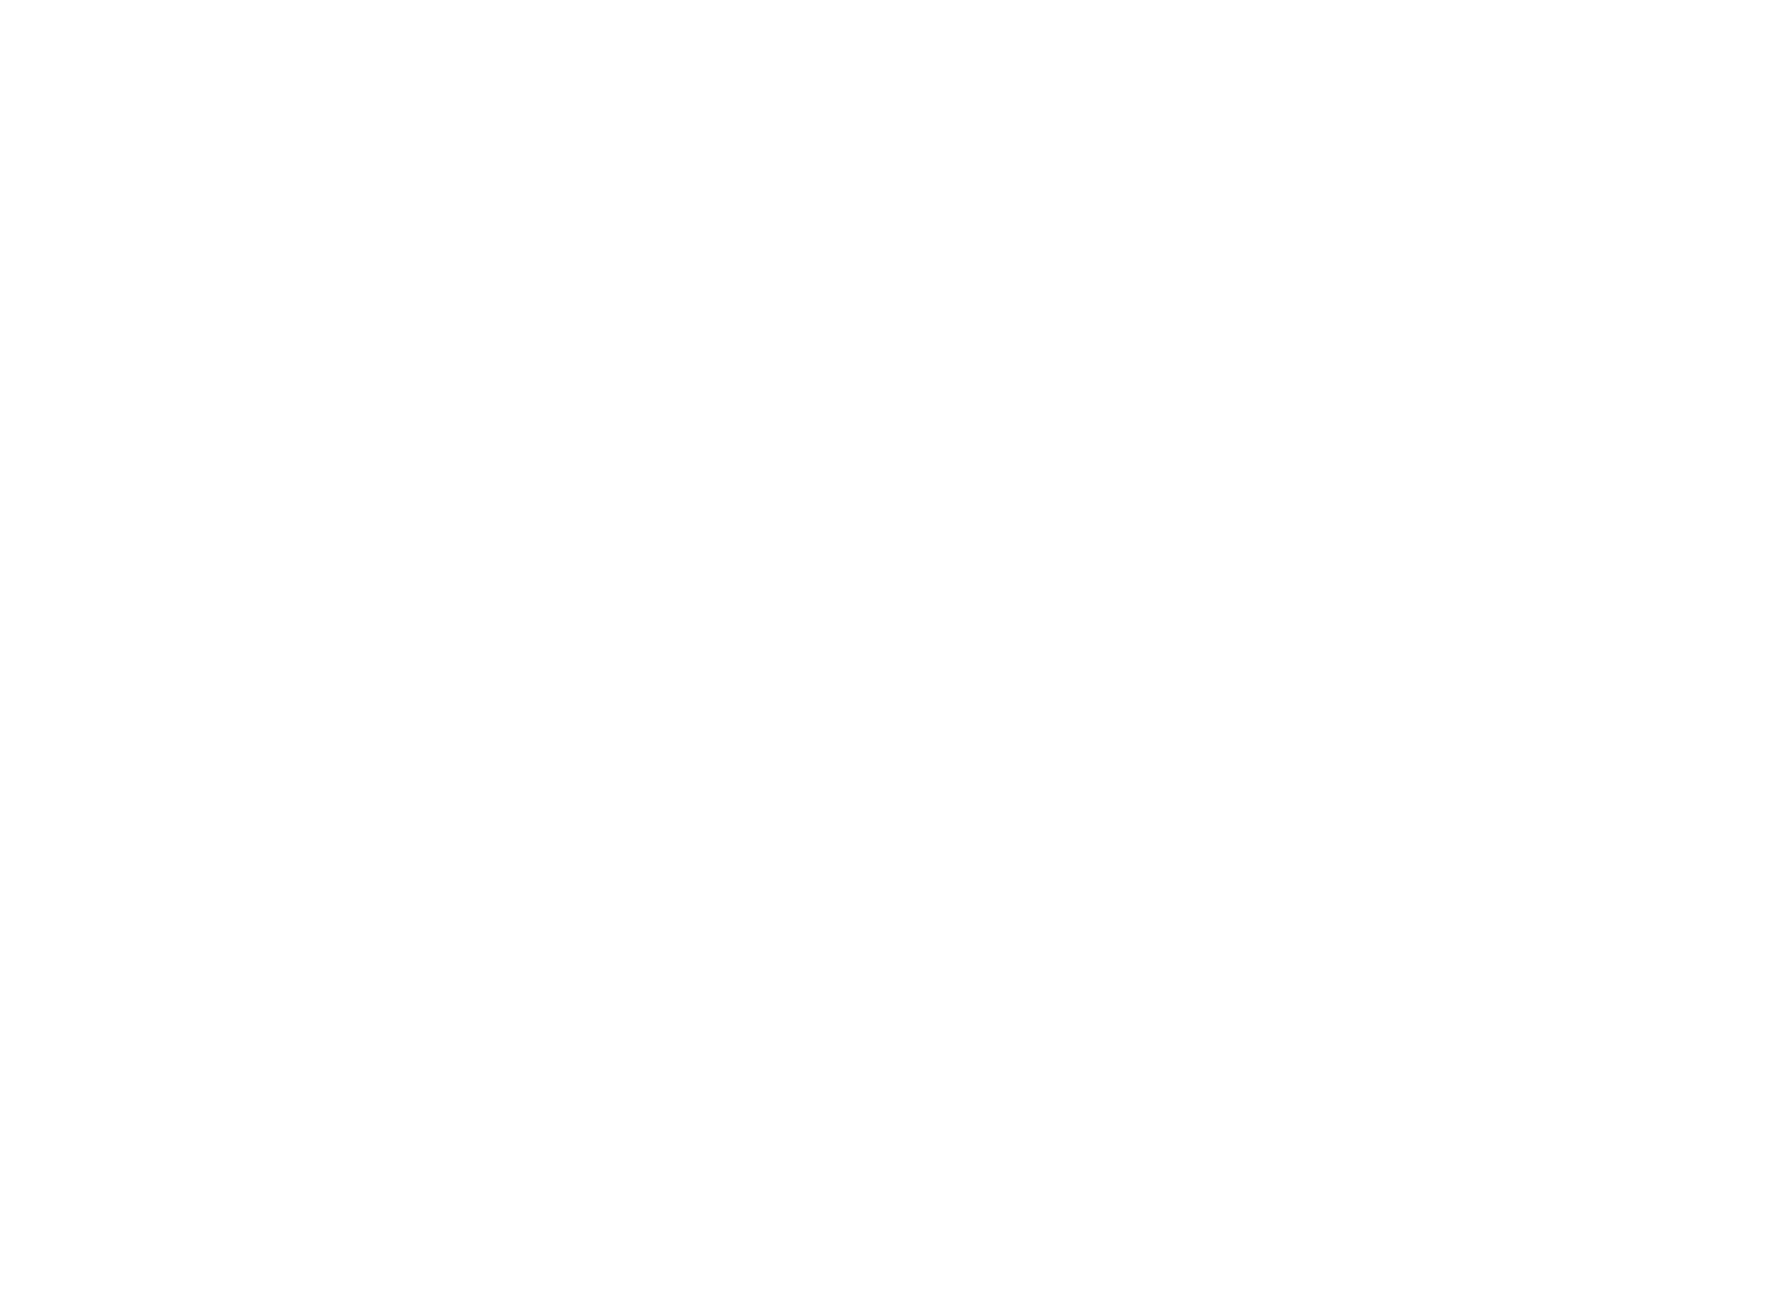 .dog logo